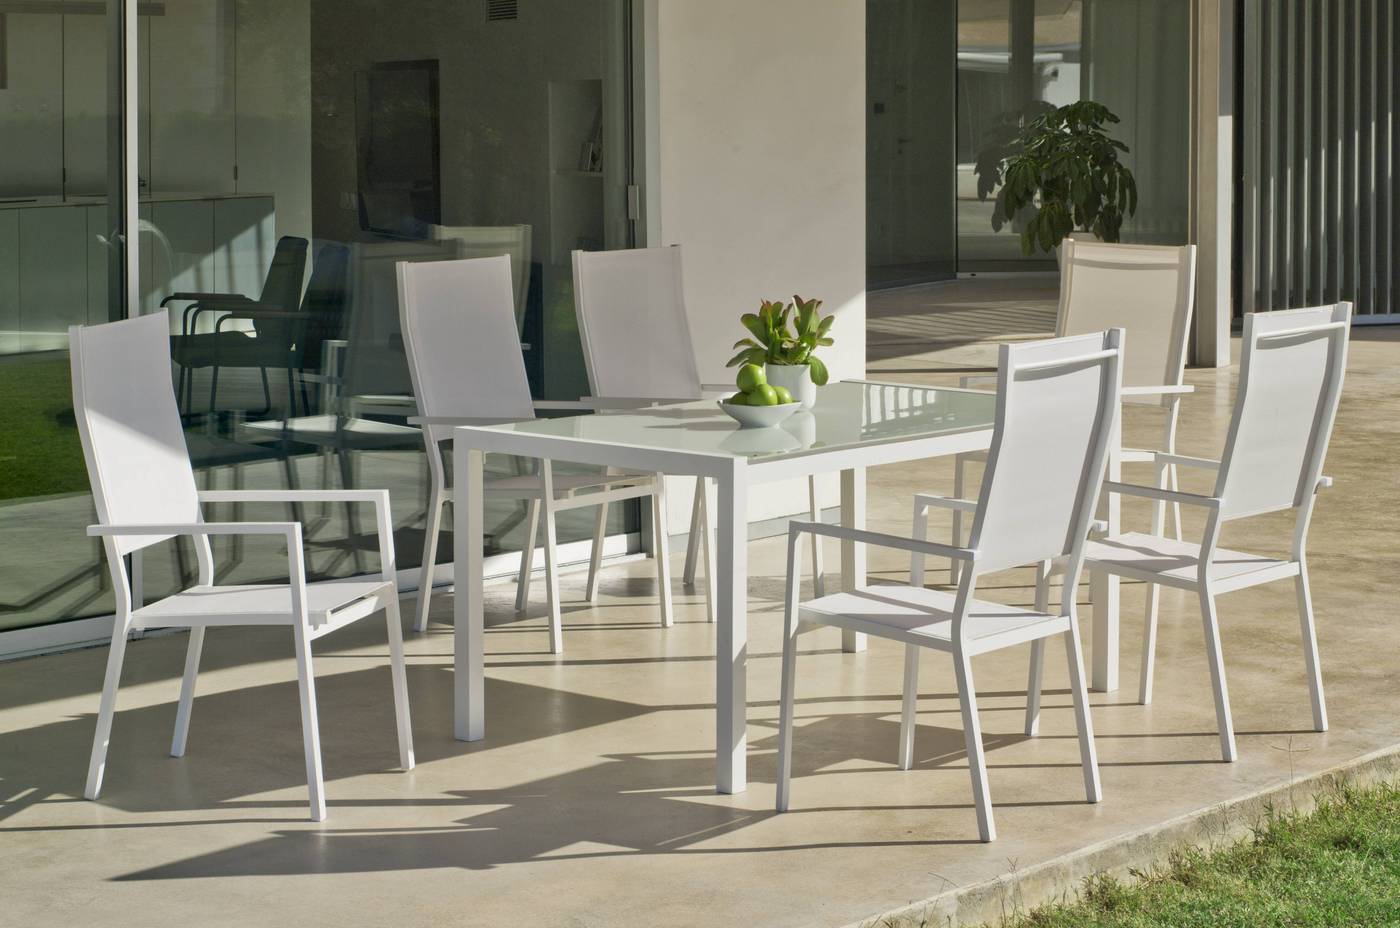 Sillón Aluminio Janeiro - Sillón respaldo alto, apilable, de aluminio color blanco, plata o antracita, con asiento y respaldo de textilen